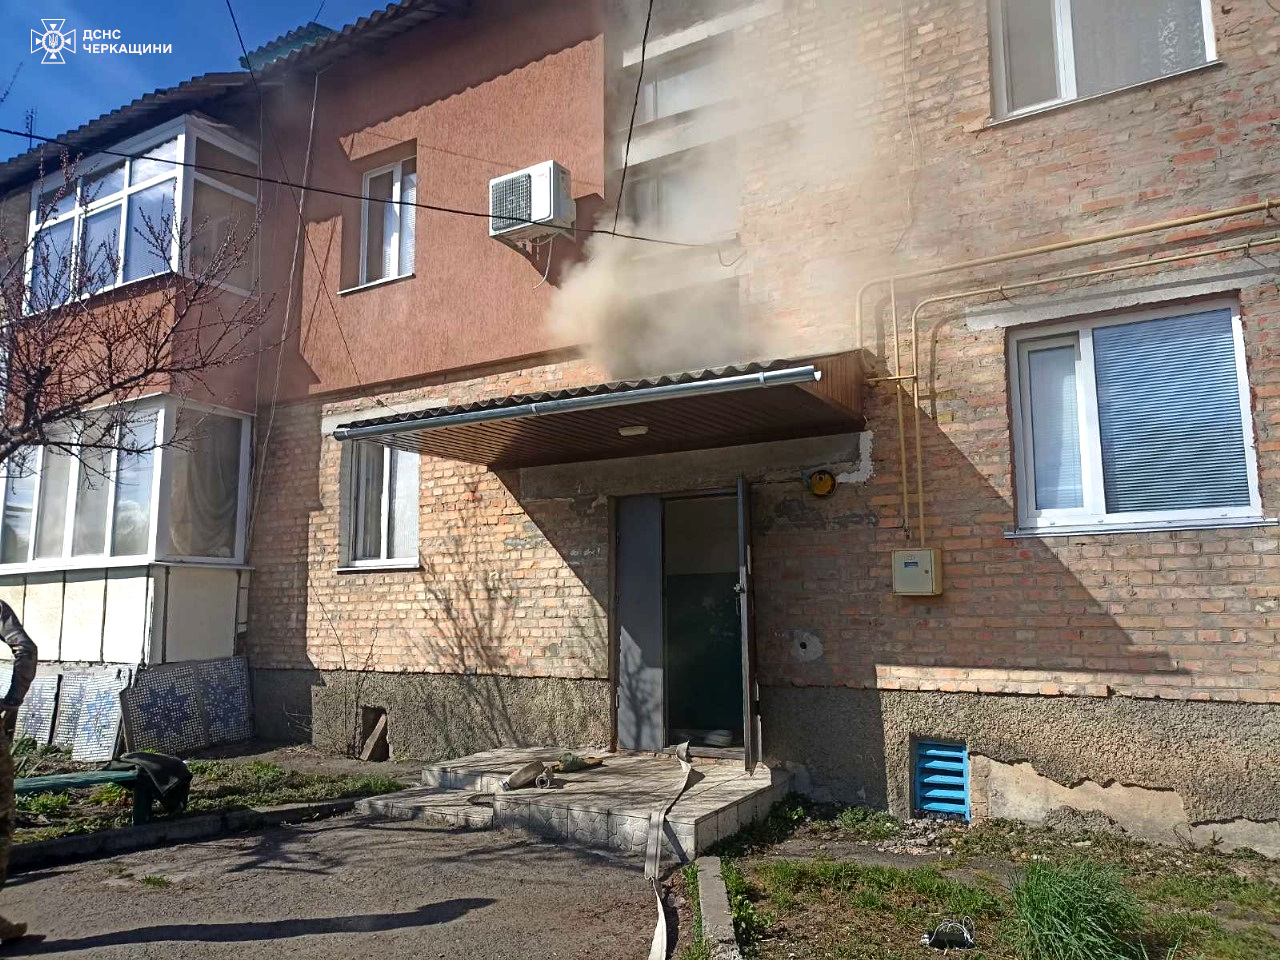 Під час пожежі в Черкаському районі евакуювали 2 людей, серед них − дитина